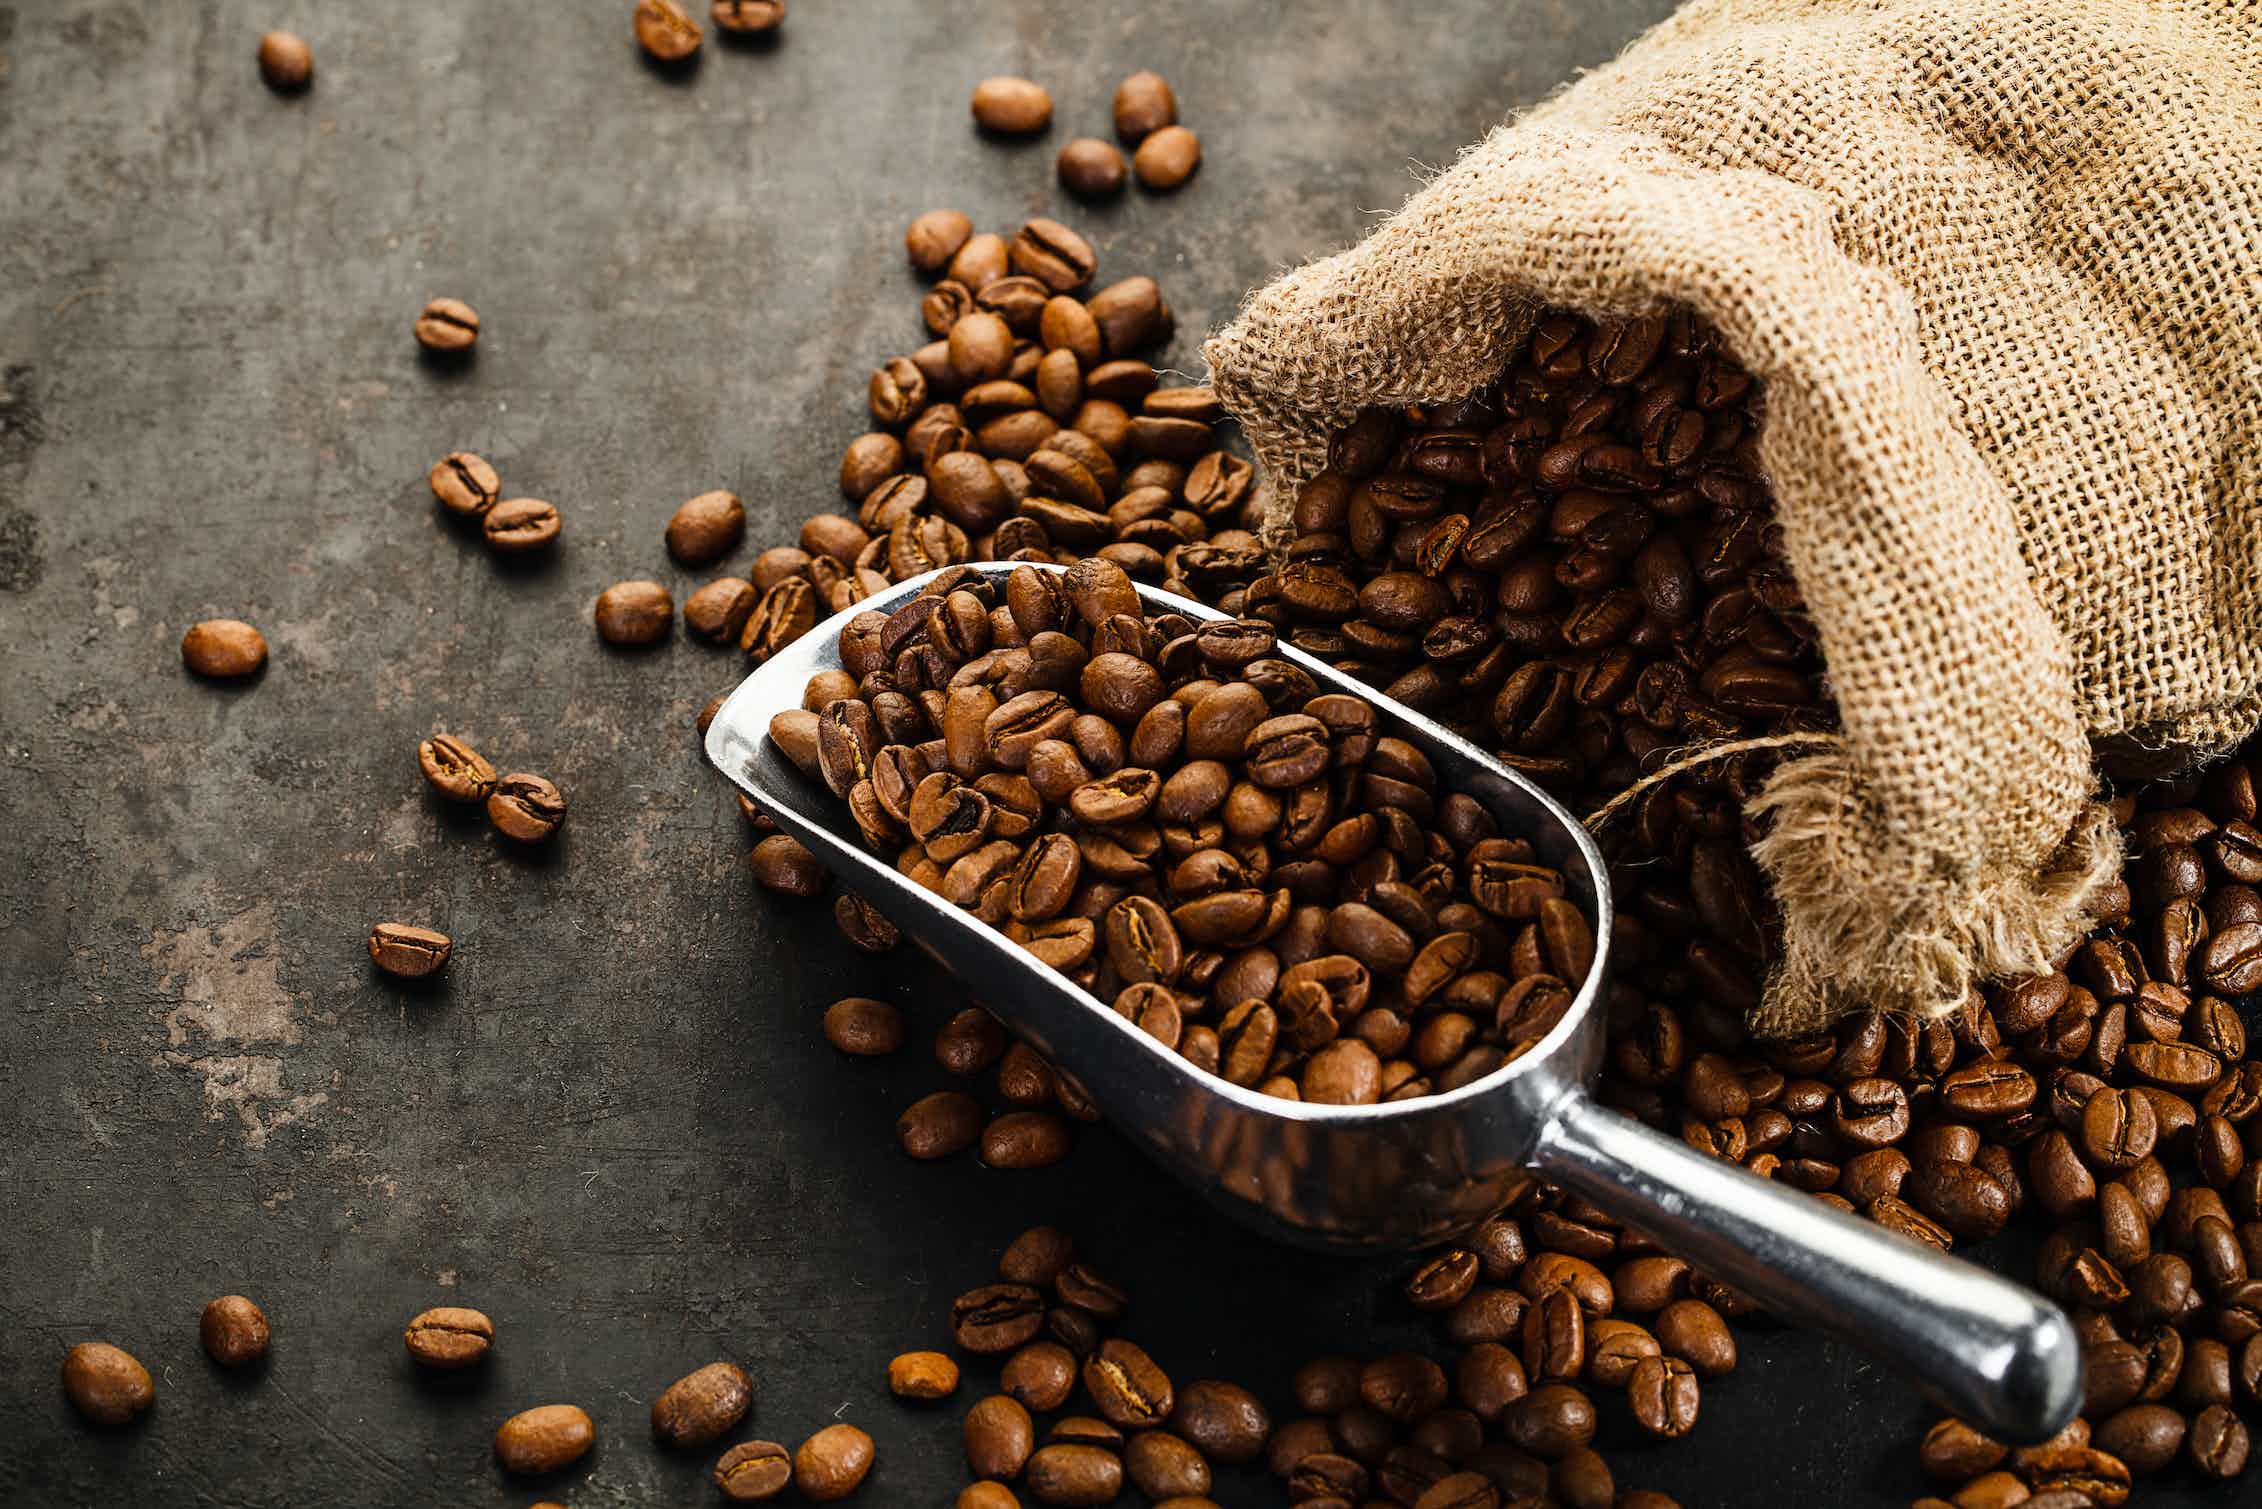 Trong 100g hạt cà phê chỉ chứa 0,5 kcal nên cà phê nguyên chất có tác dụng giảm cân